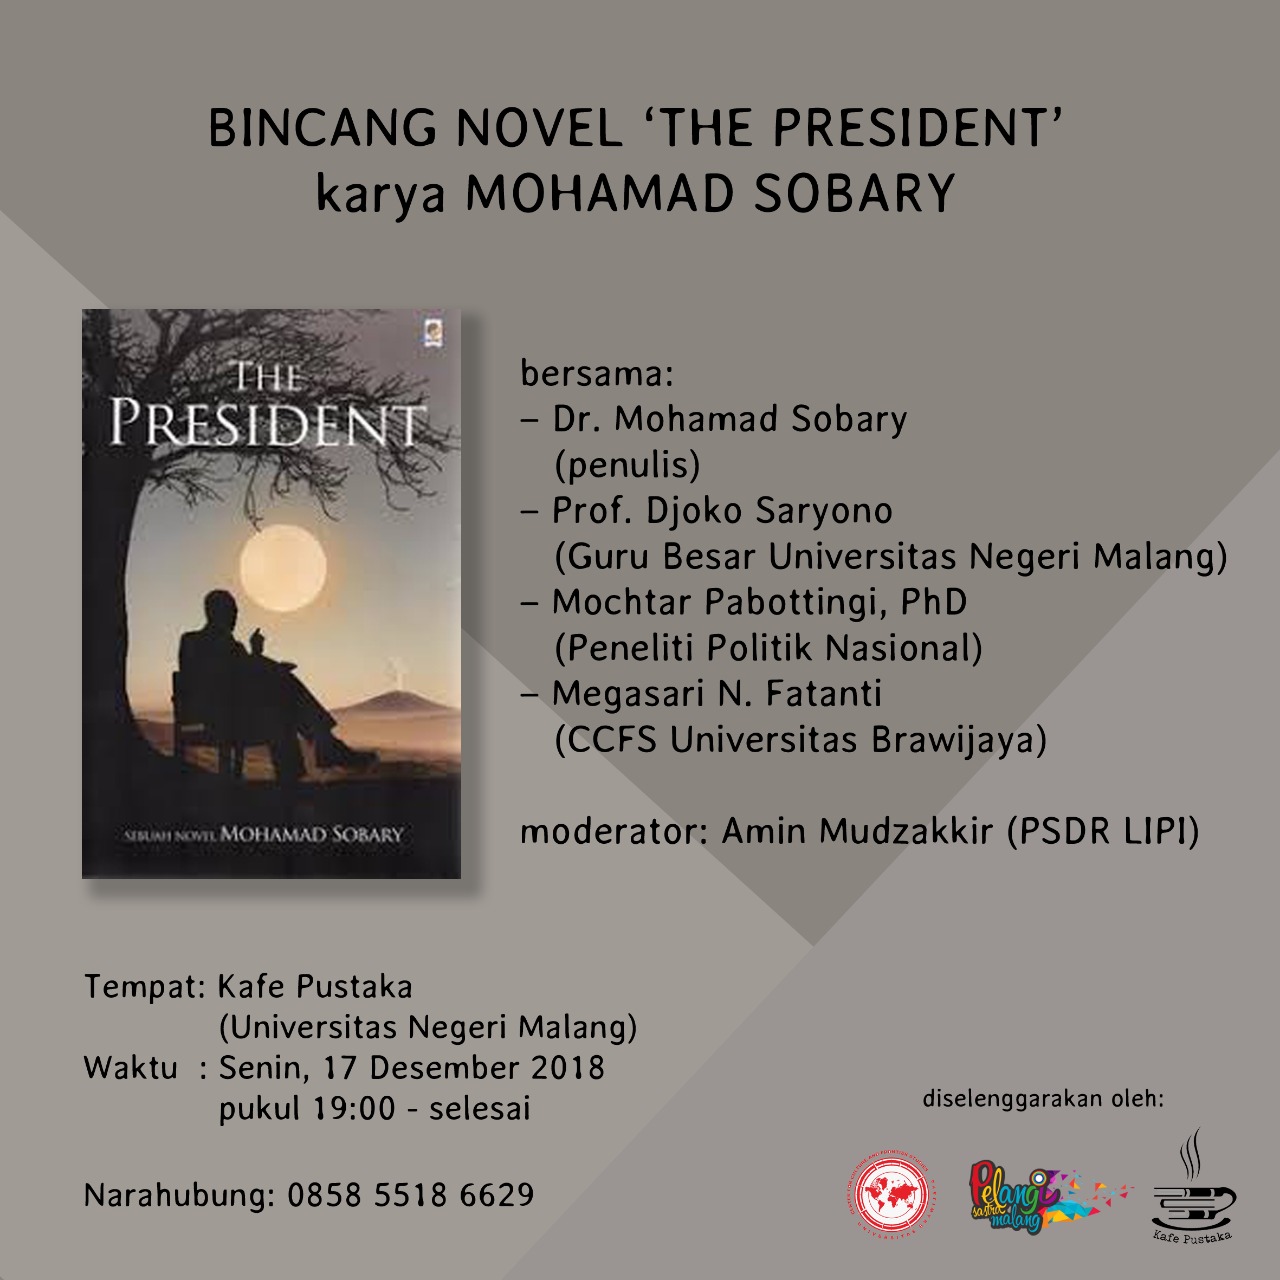 Bincang Novel "The President "